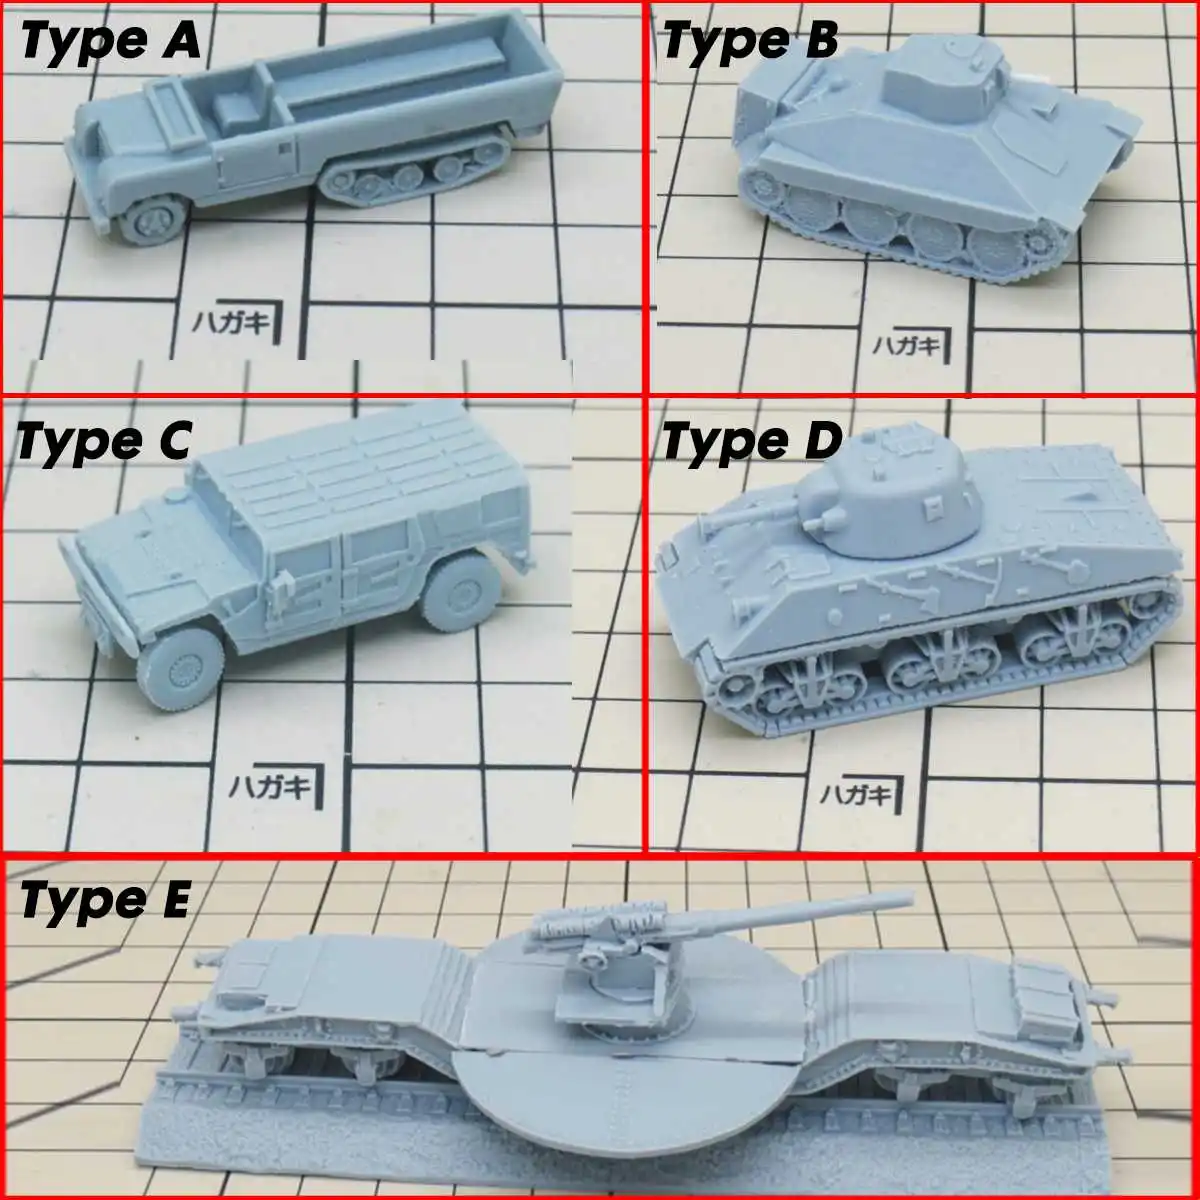 1/144 Второй мировой войны модельные Автомобили Авто Танк серии DIY Смола Модель песок модель стола фигурки дети подарок 3D игрушки фигурные